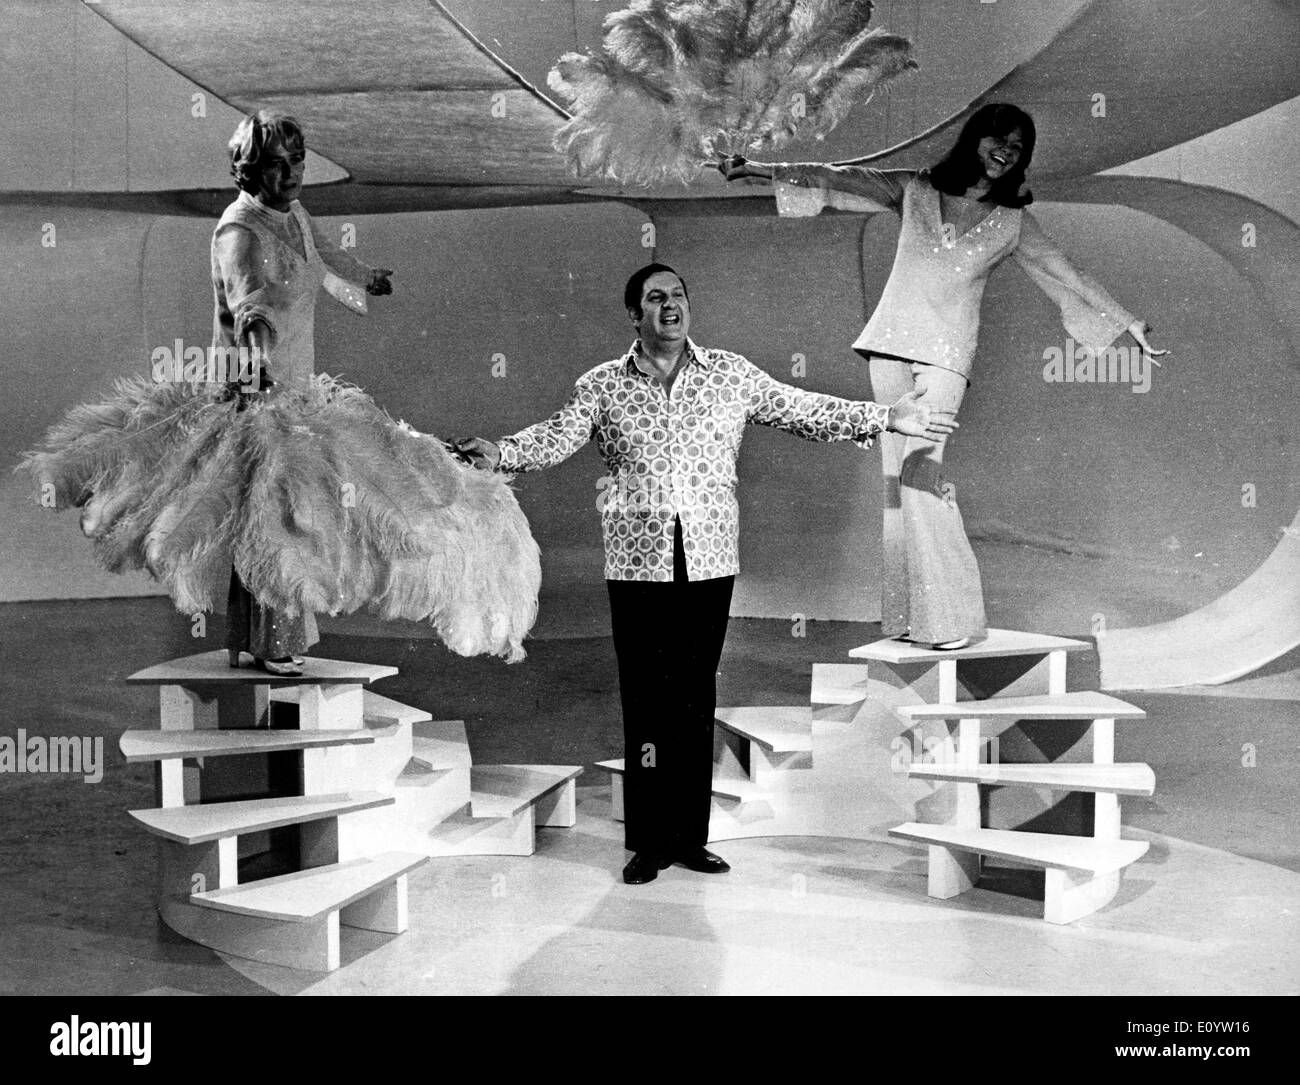 Jun 15, 1971 - Parigi, Francia - File (foto) JACQUES CARONTE era un attore francese e regista. Nella foto: Jacques Caronte, centro con JACQUELINE MAILLAN, sinistra e SOPHIE DESMARETS, su una TV show di varietà. Foto Stock